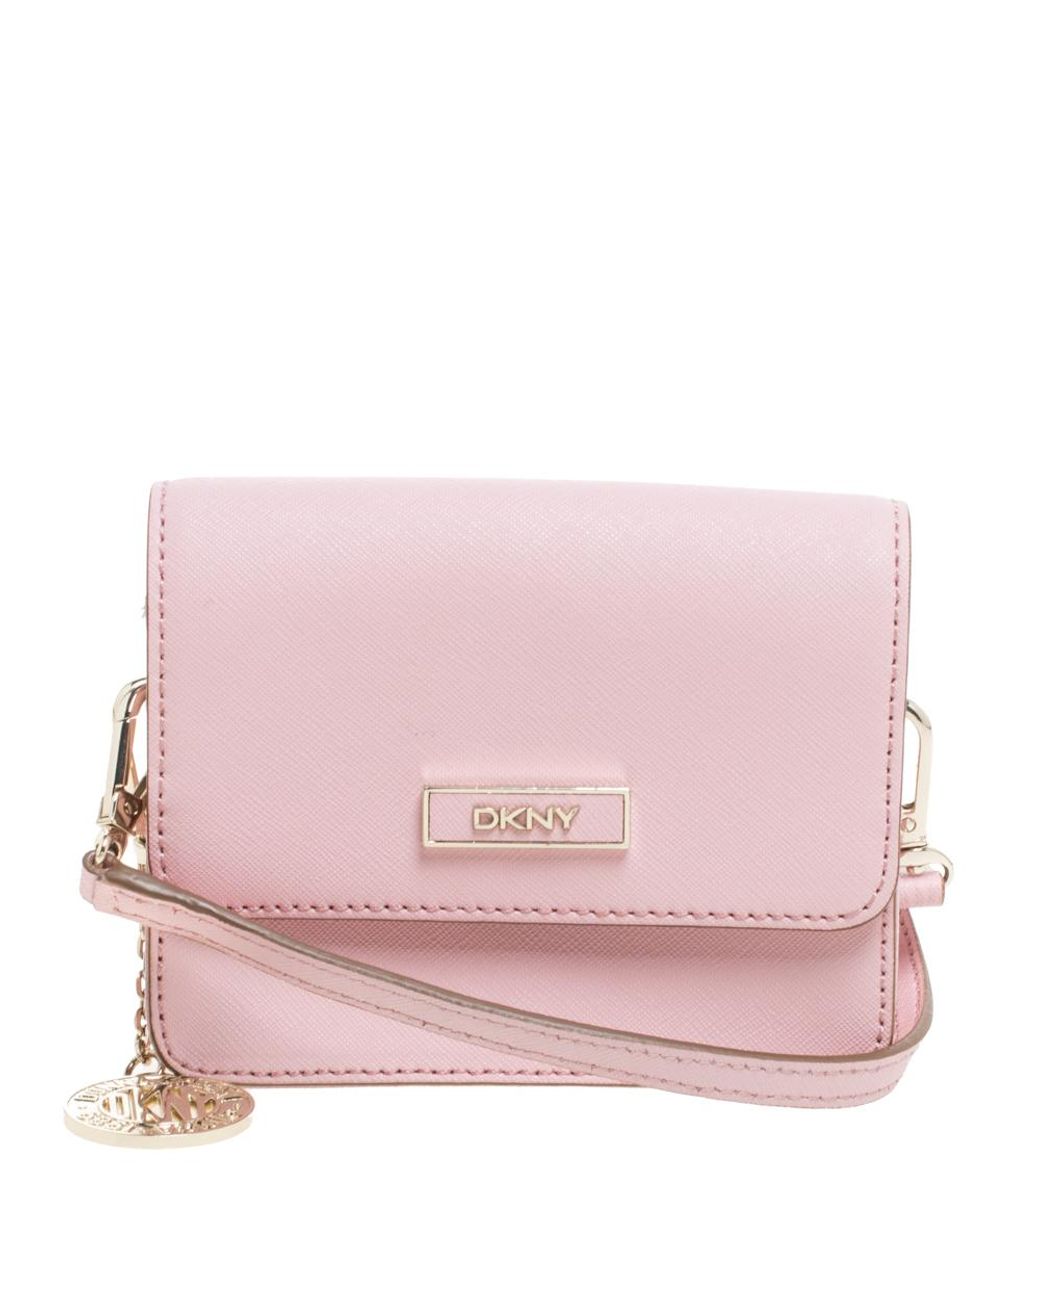 DKNY Pink Leather Mini Flap Crossbody Bag - Lyst